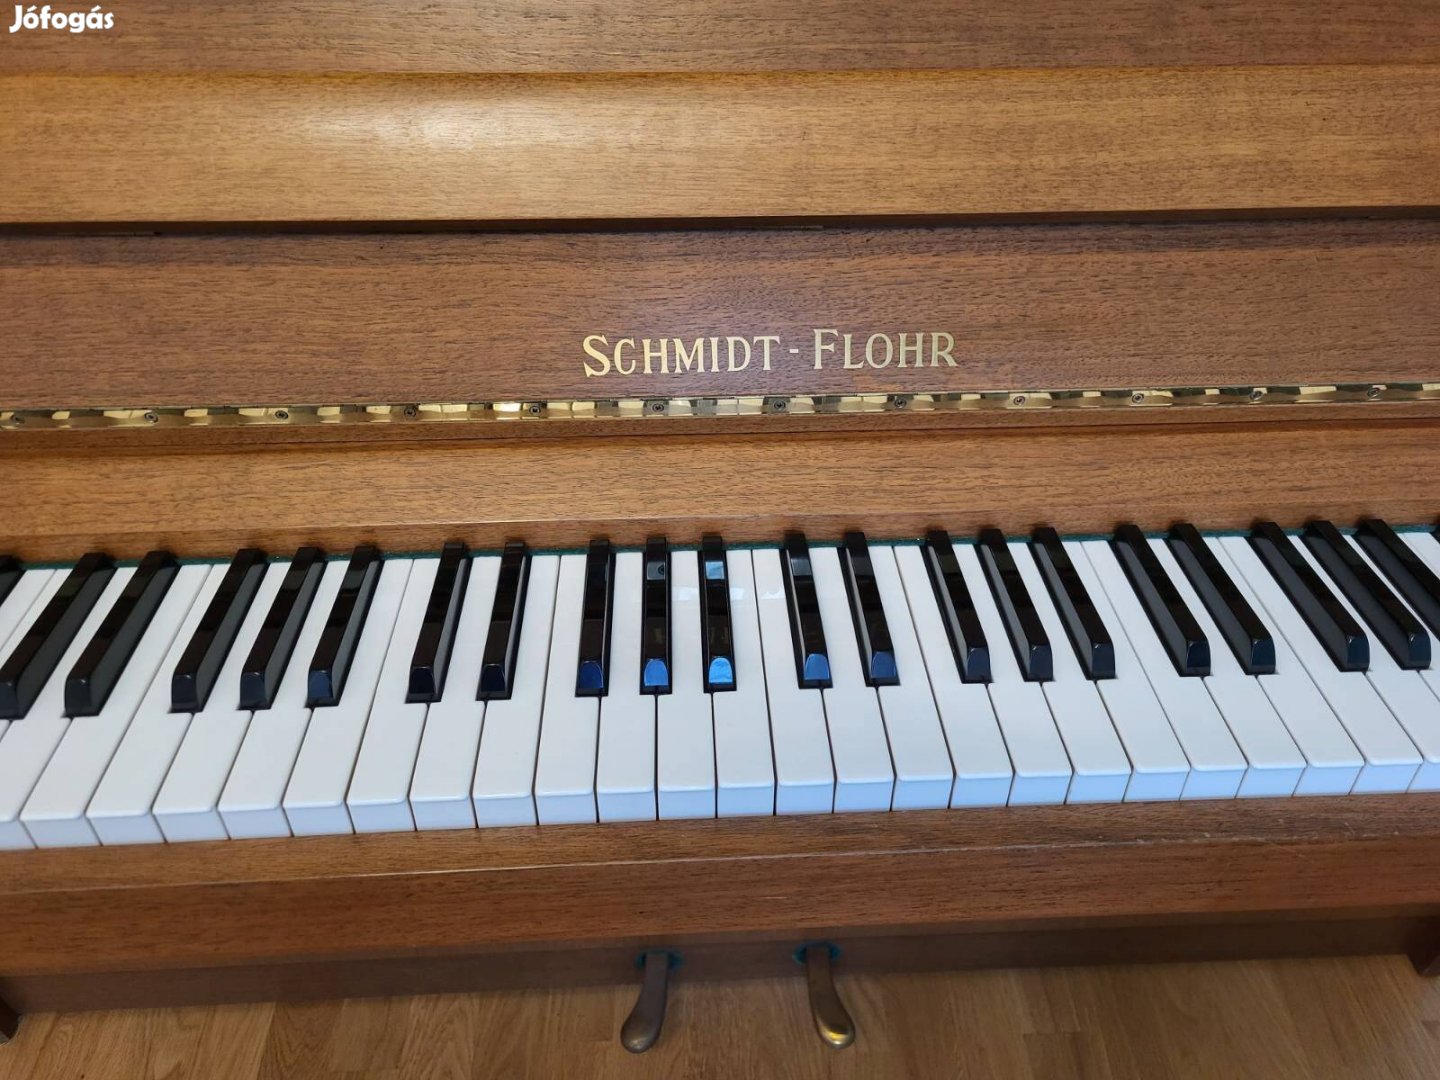 Schmidt-Flohr pianínó